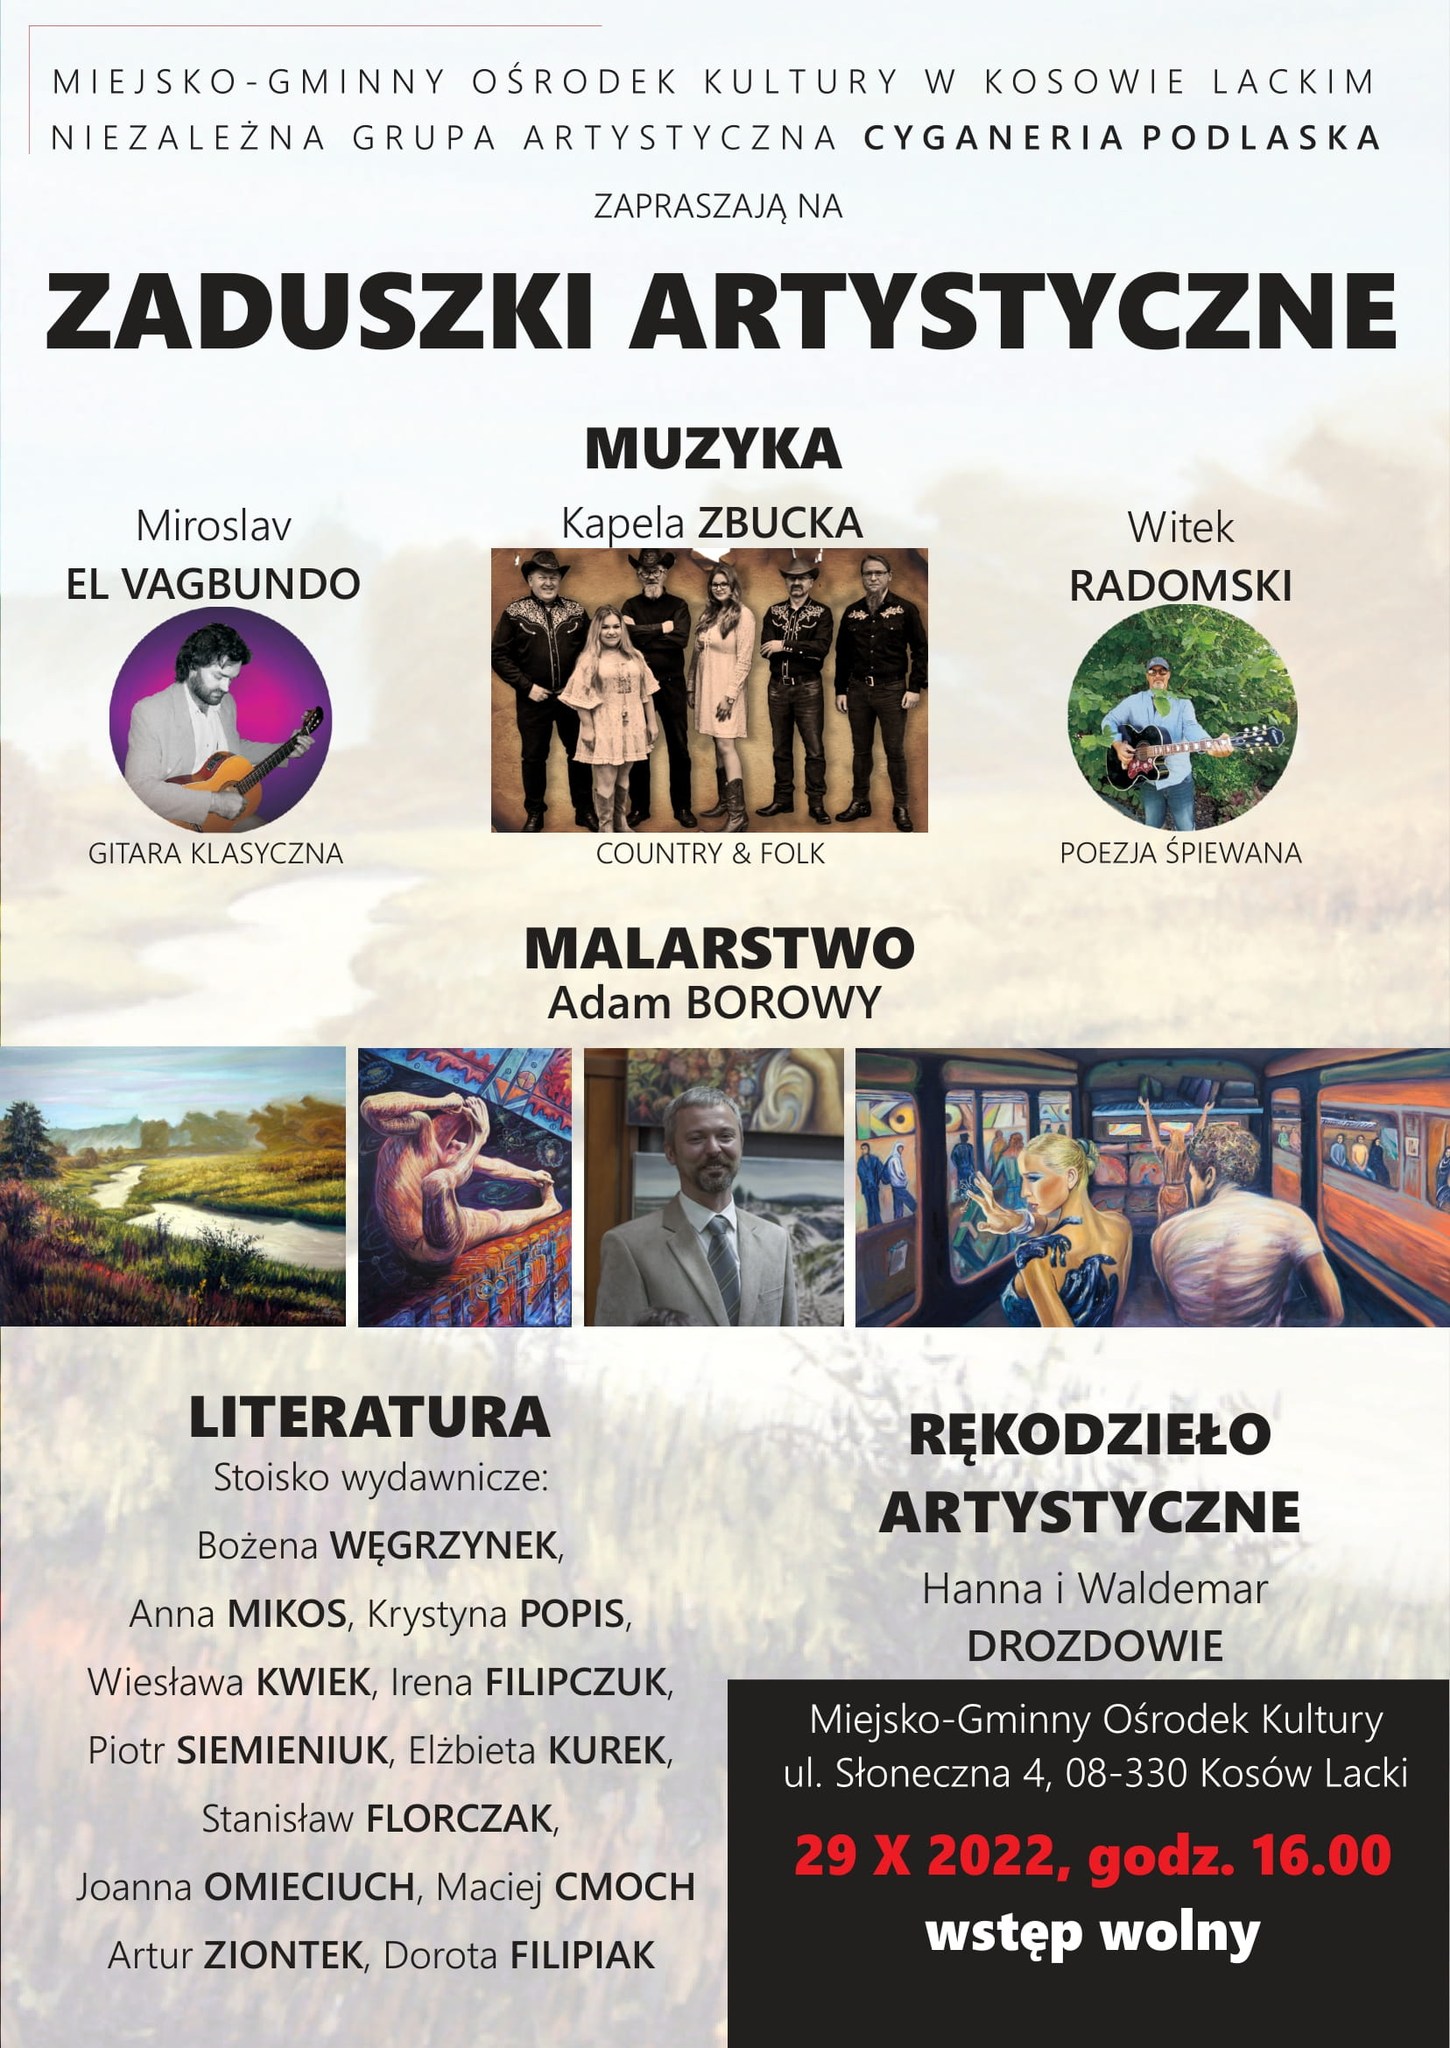 Zaduszki artystyczne 2022 w MGOK - plakat